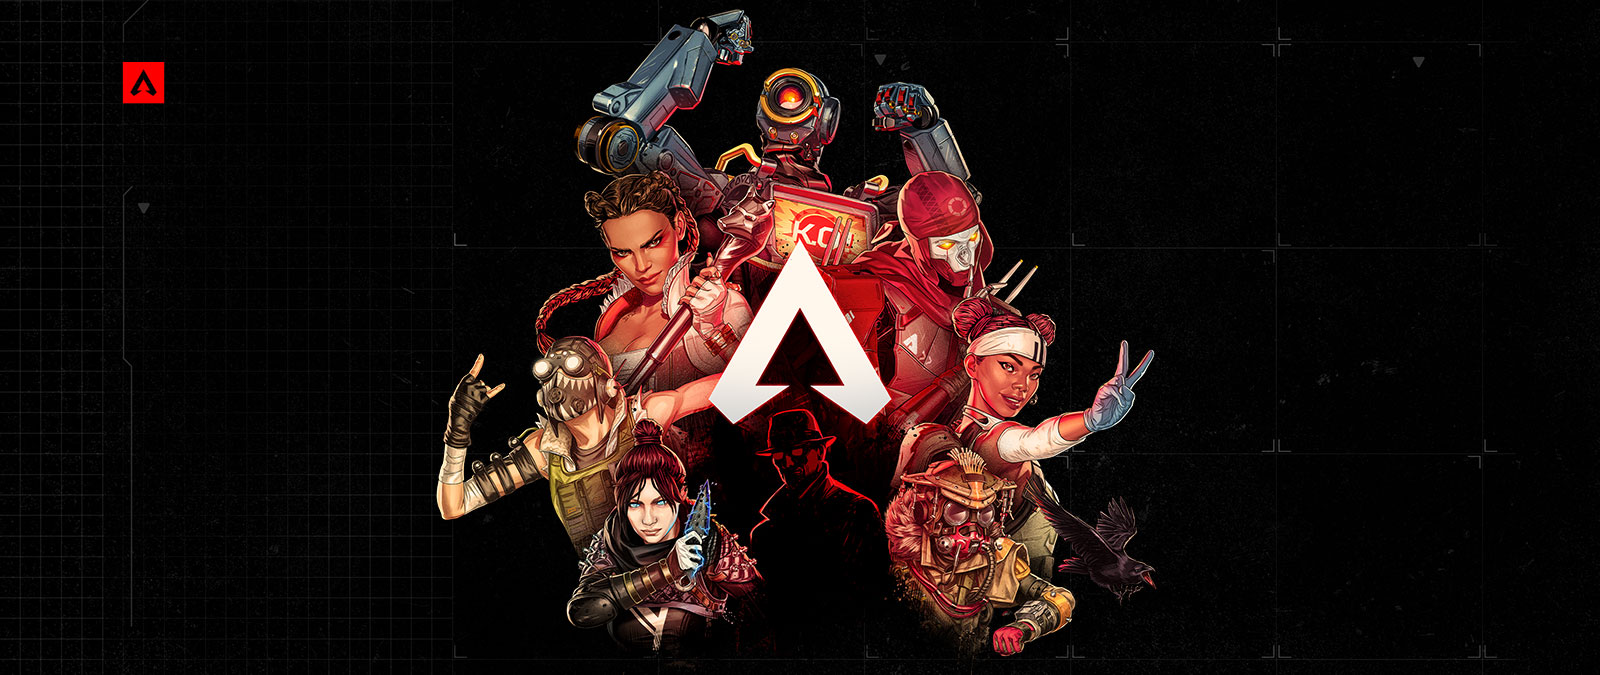 Een verzameling Apex Legends-personages poseert zelfverzekerd rond het logo van de game.